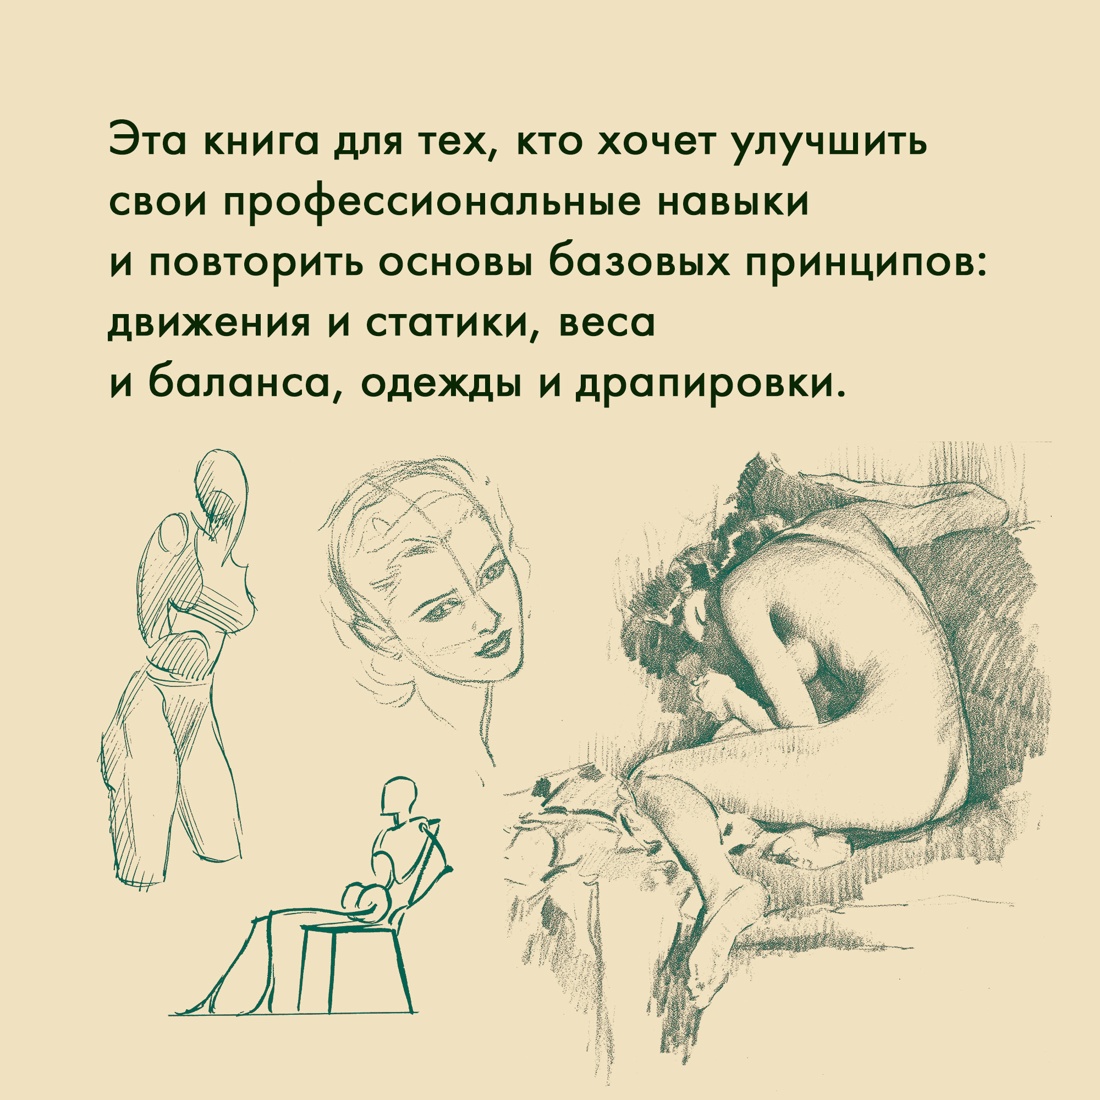 Промо материал к книге "Рисование фигуры" №4